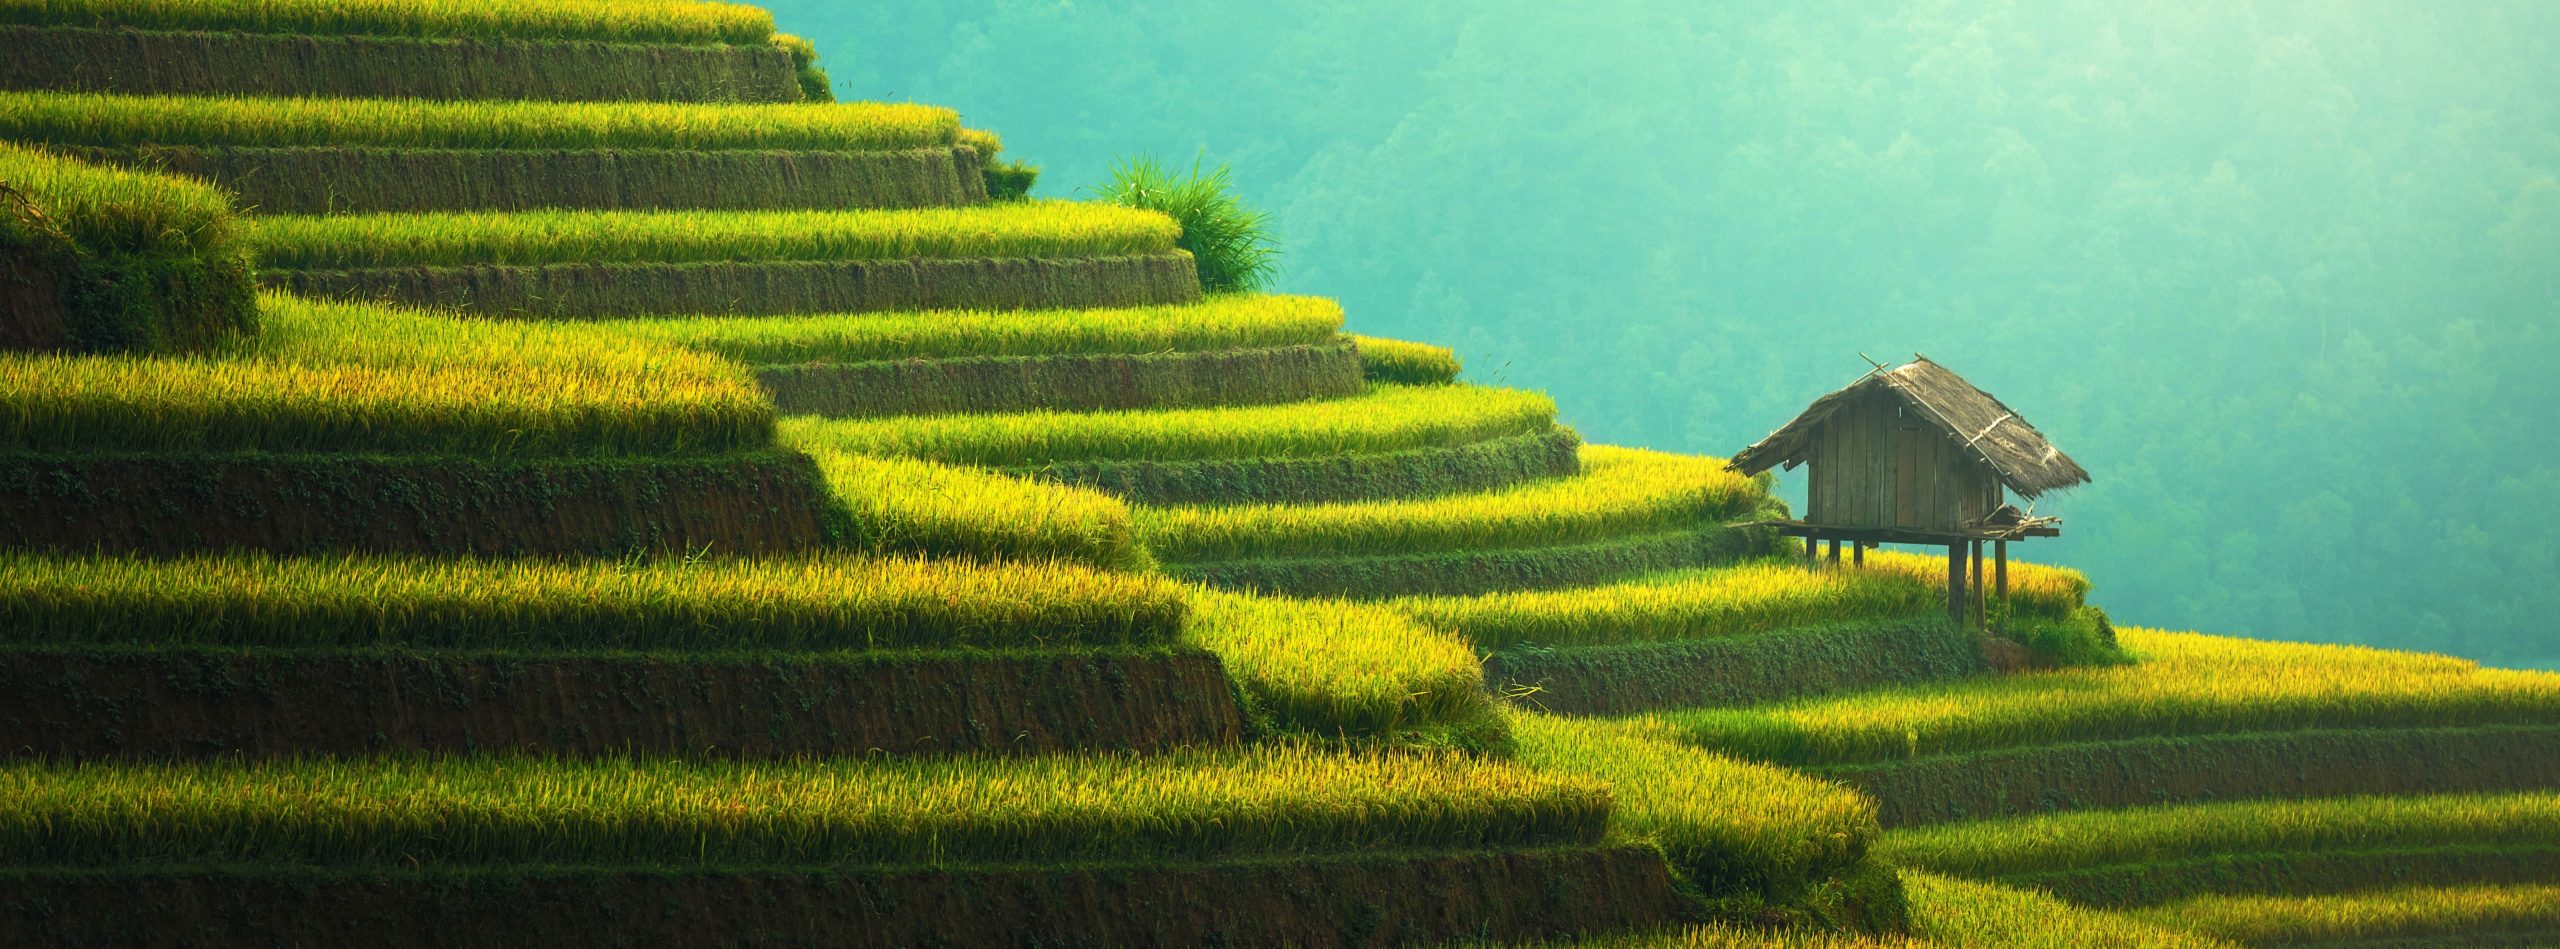 Wallpaper Rice Terraces Mountain Landscape